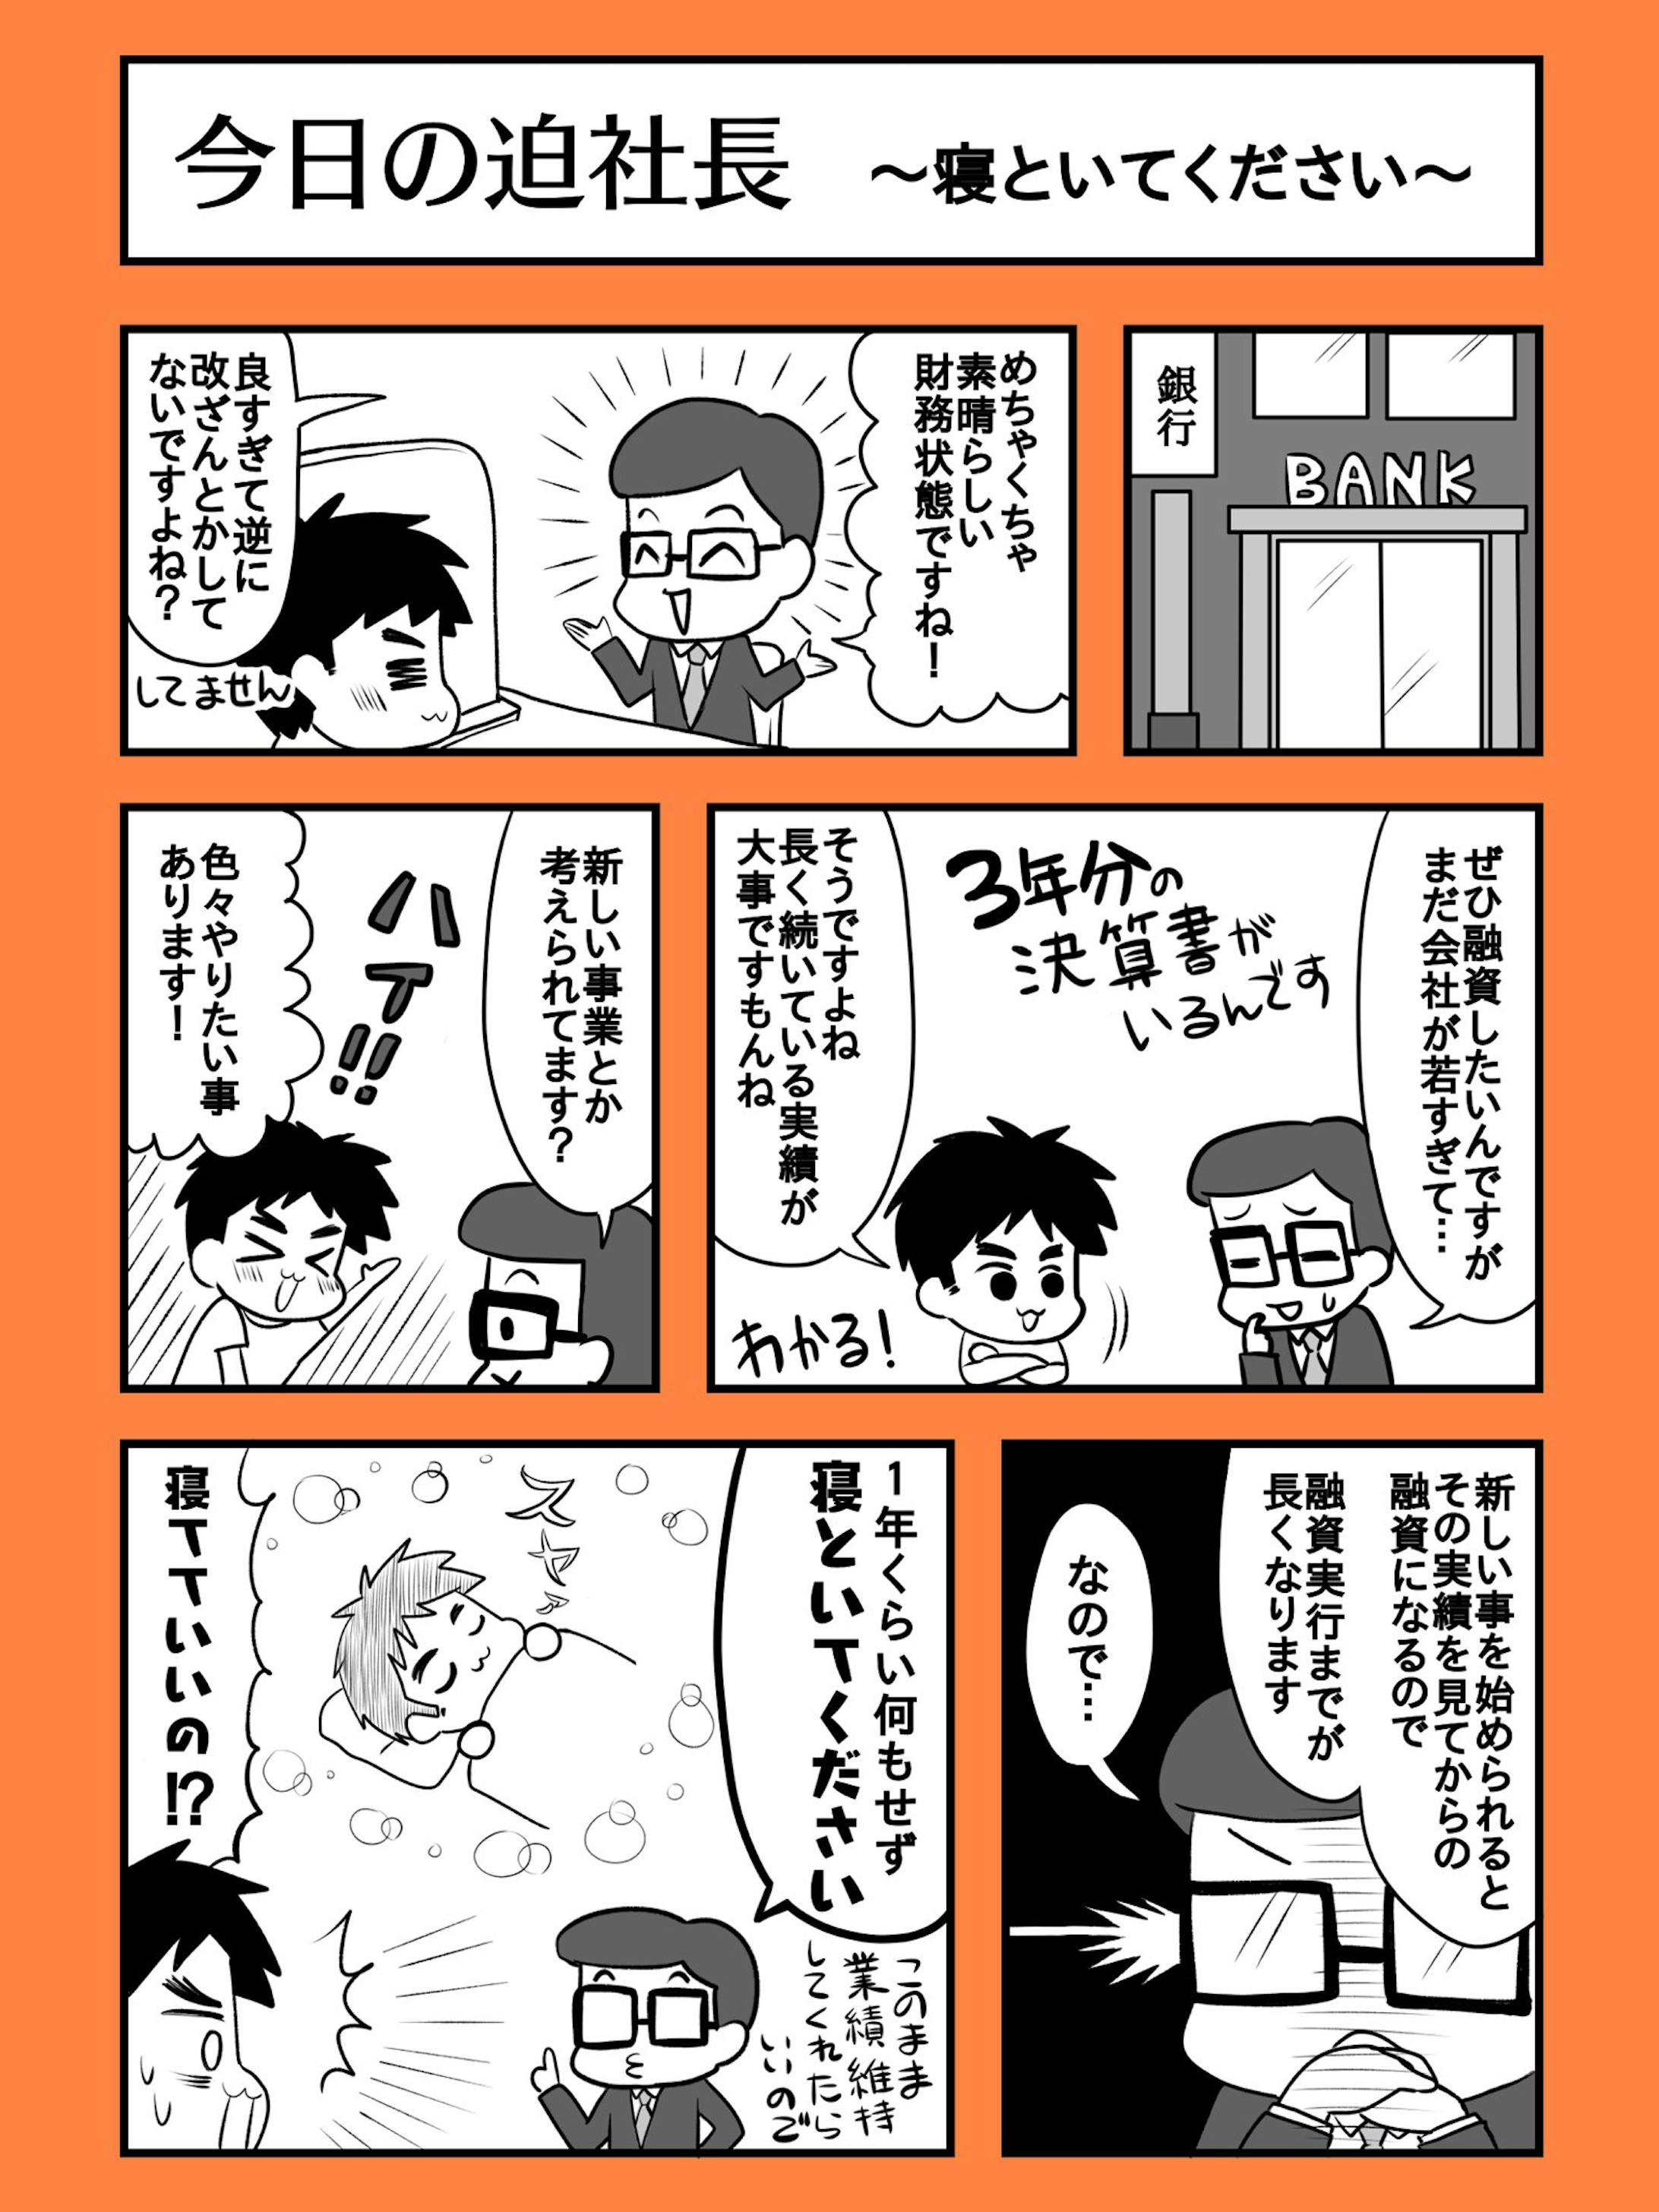 今日の迫社長【モノクロ漫画作成実績】-2